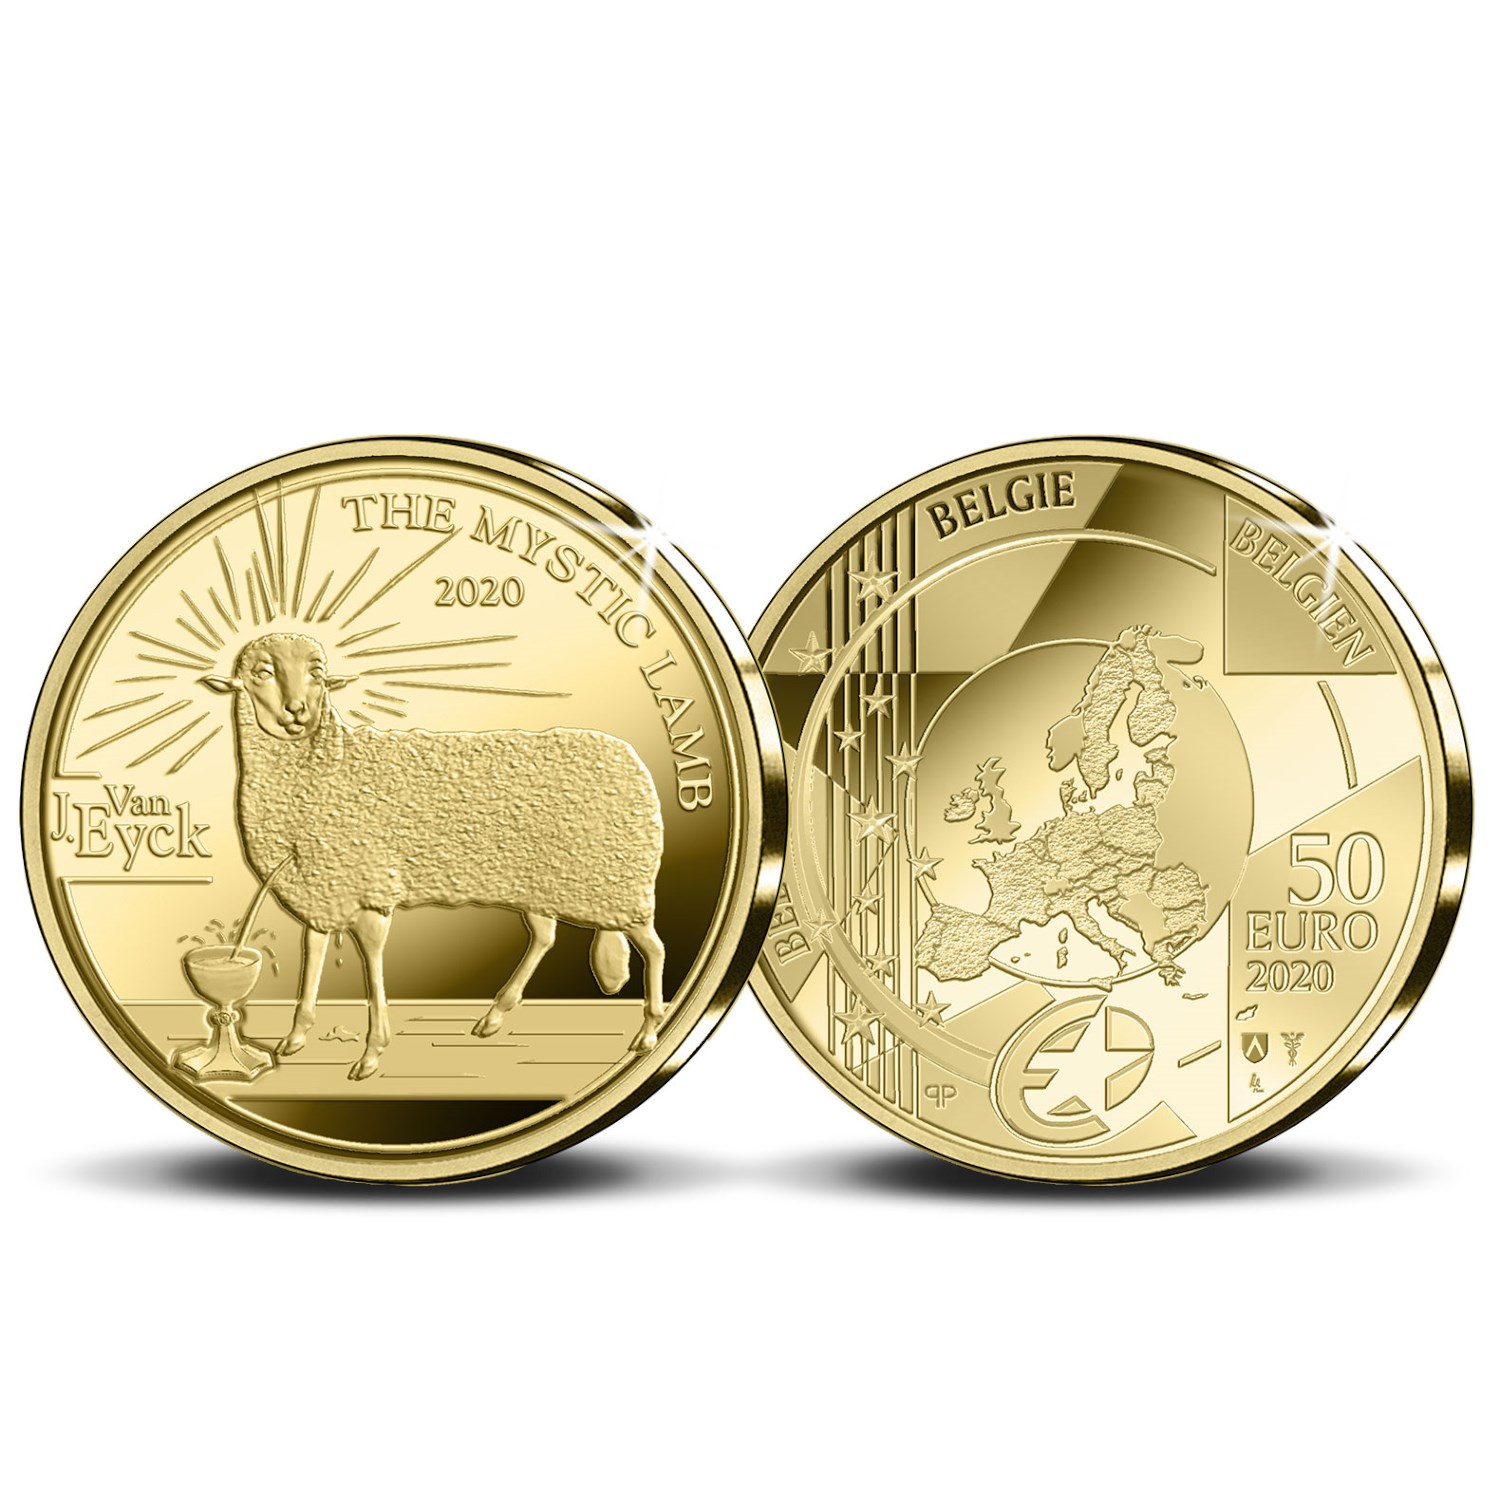 2020 numismatic program of Belgium - World Money Fair